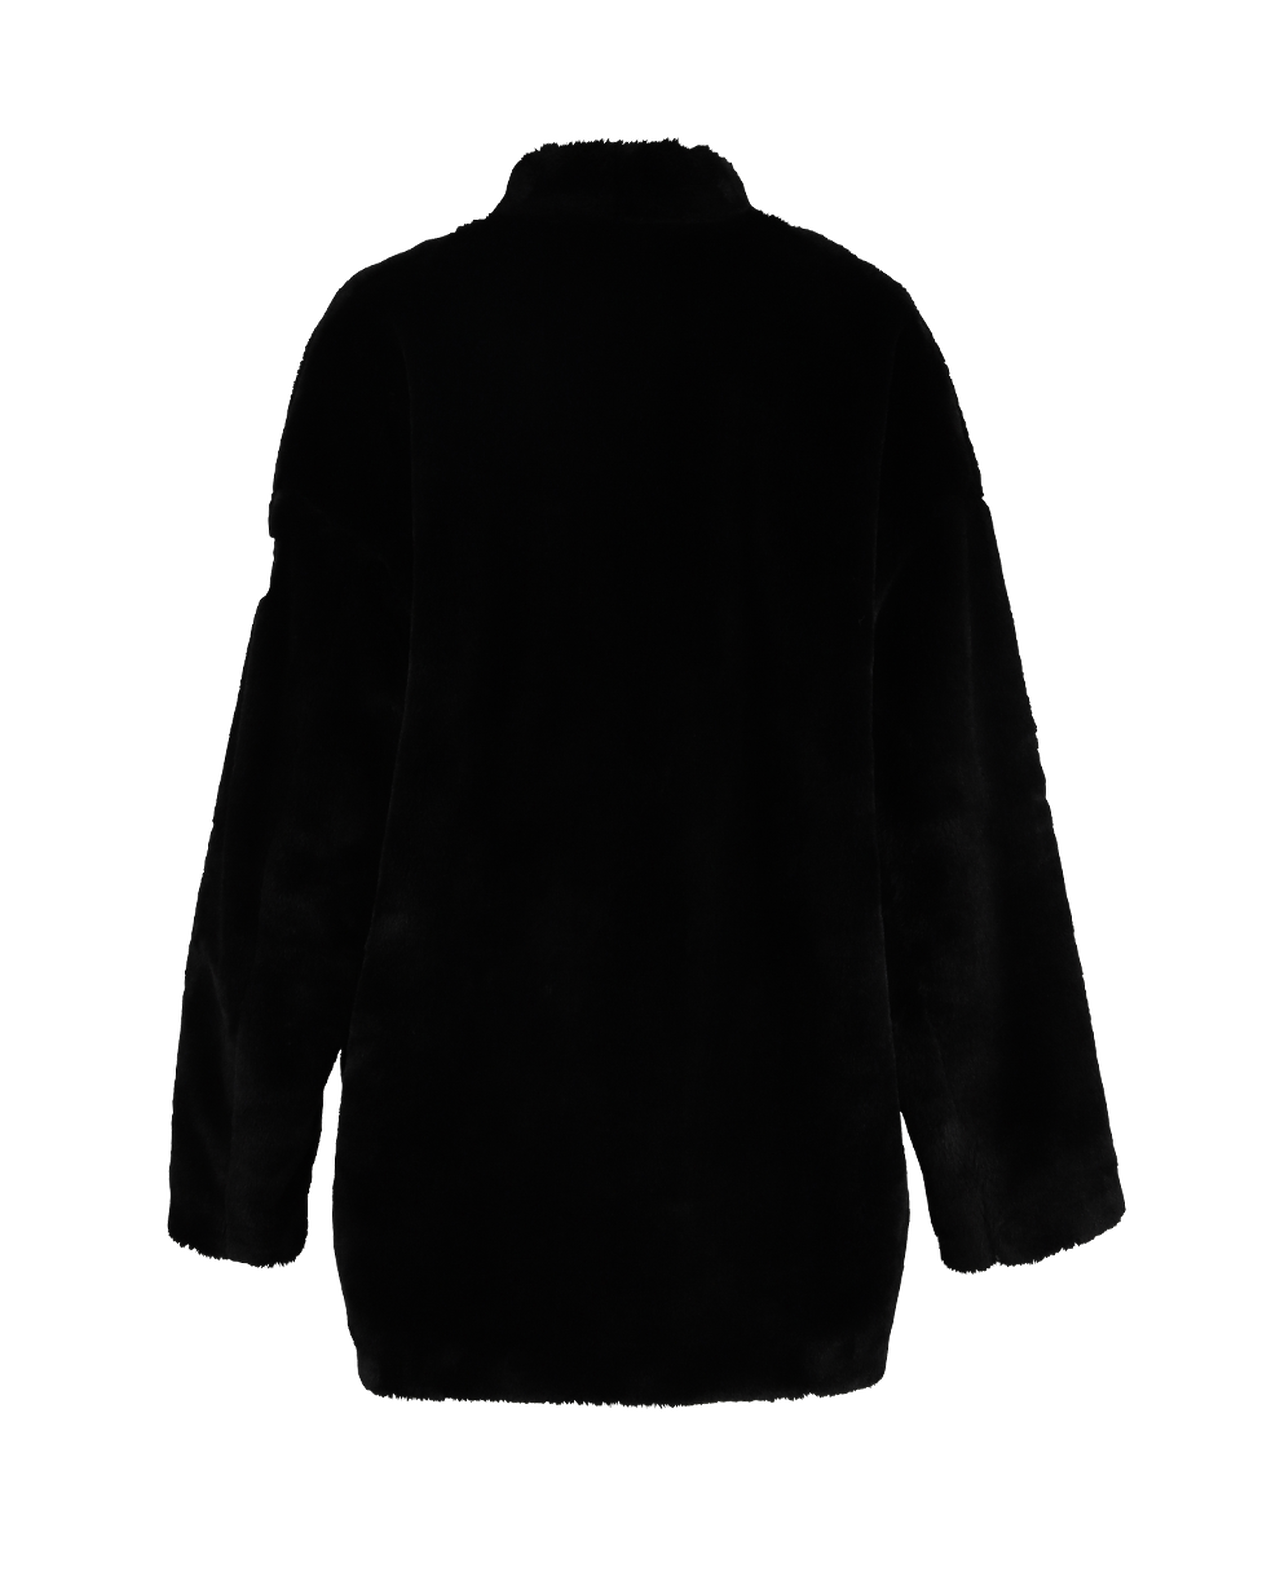 NINO Women's Jacket,BLACK, large image number 2